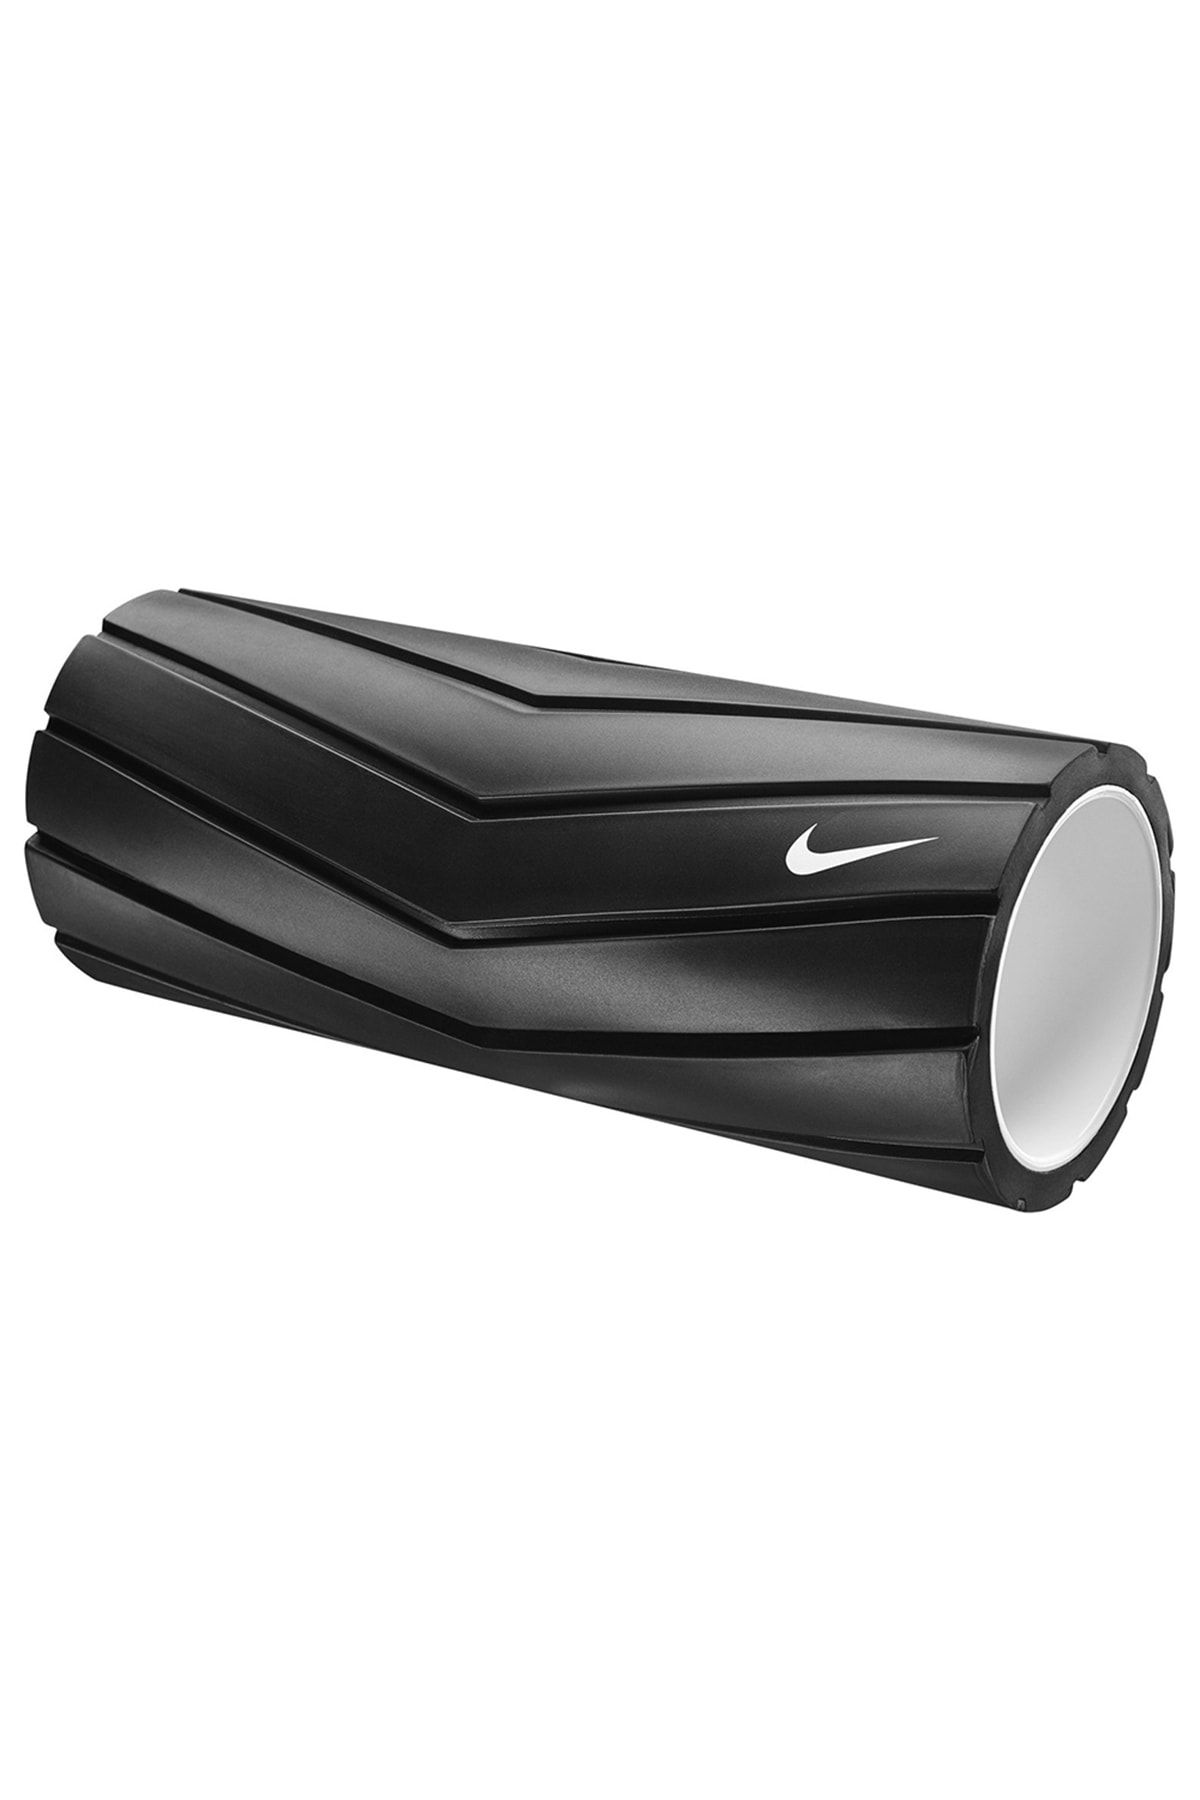 Nike N1000816-027 Recovery-yenilenme Foam Roller 32,5 Cm